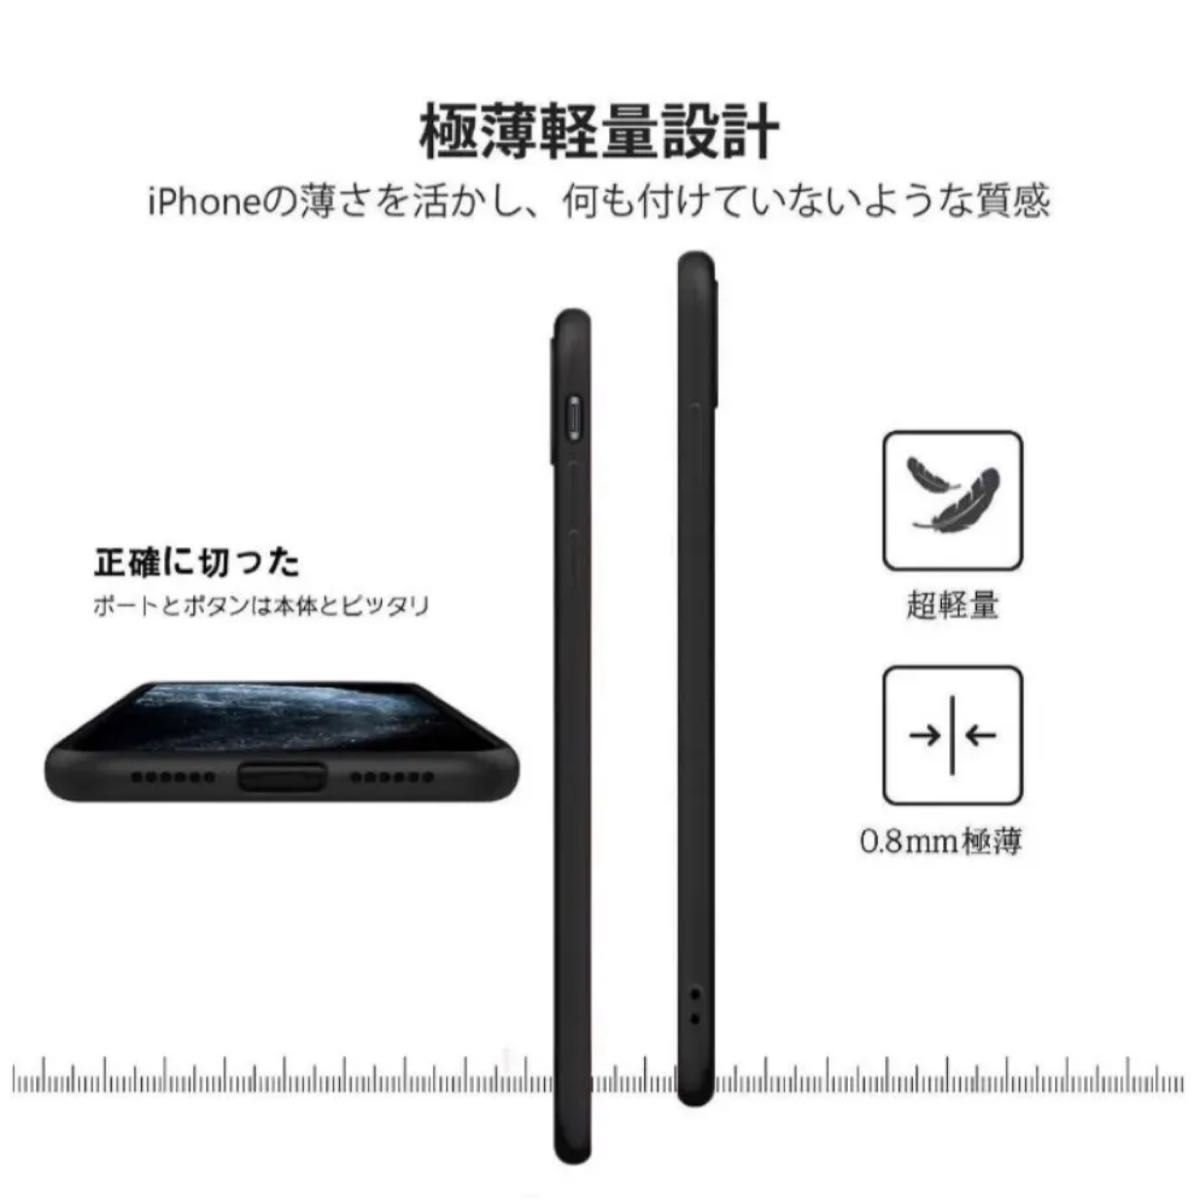 iphone11 Pro ケース シリコン 耐衝撃 アイフォン11pro カバー 傷付き防止 超軽量